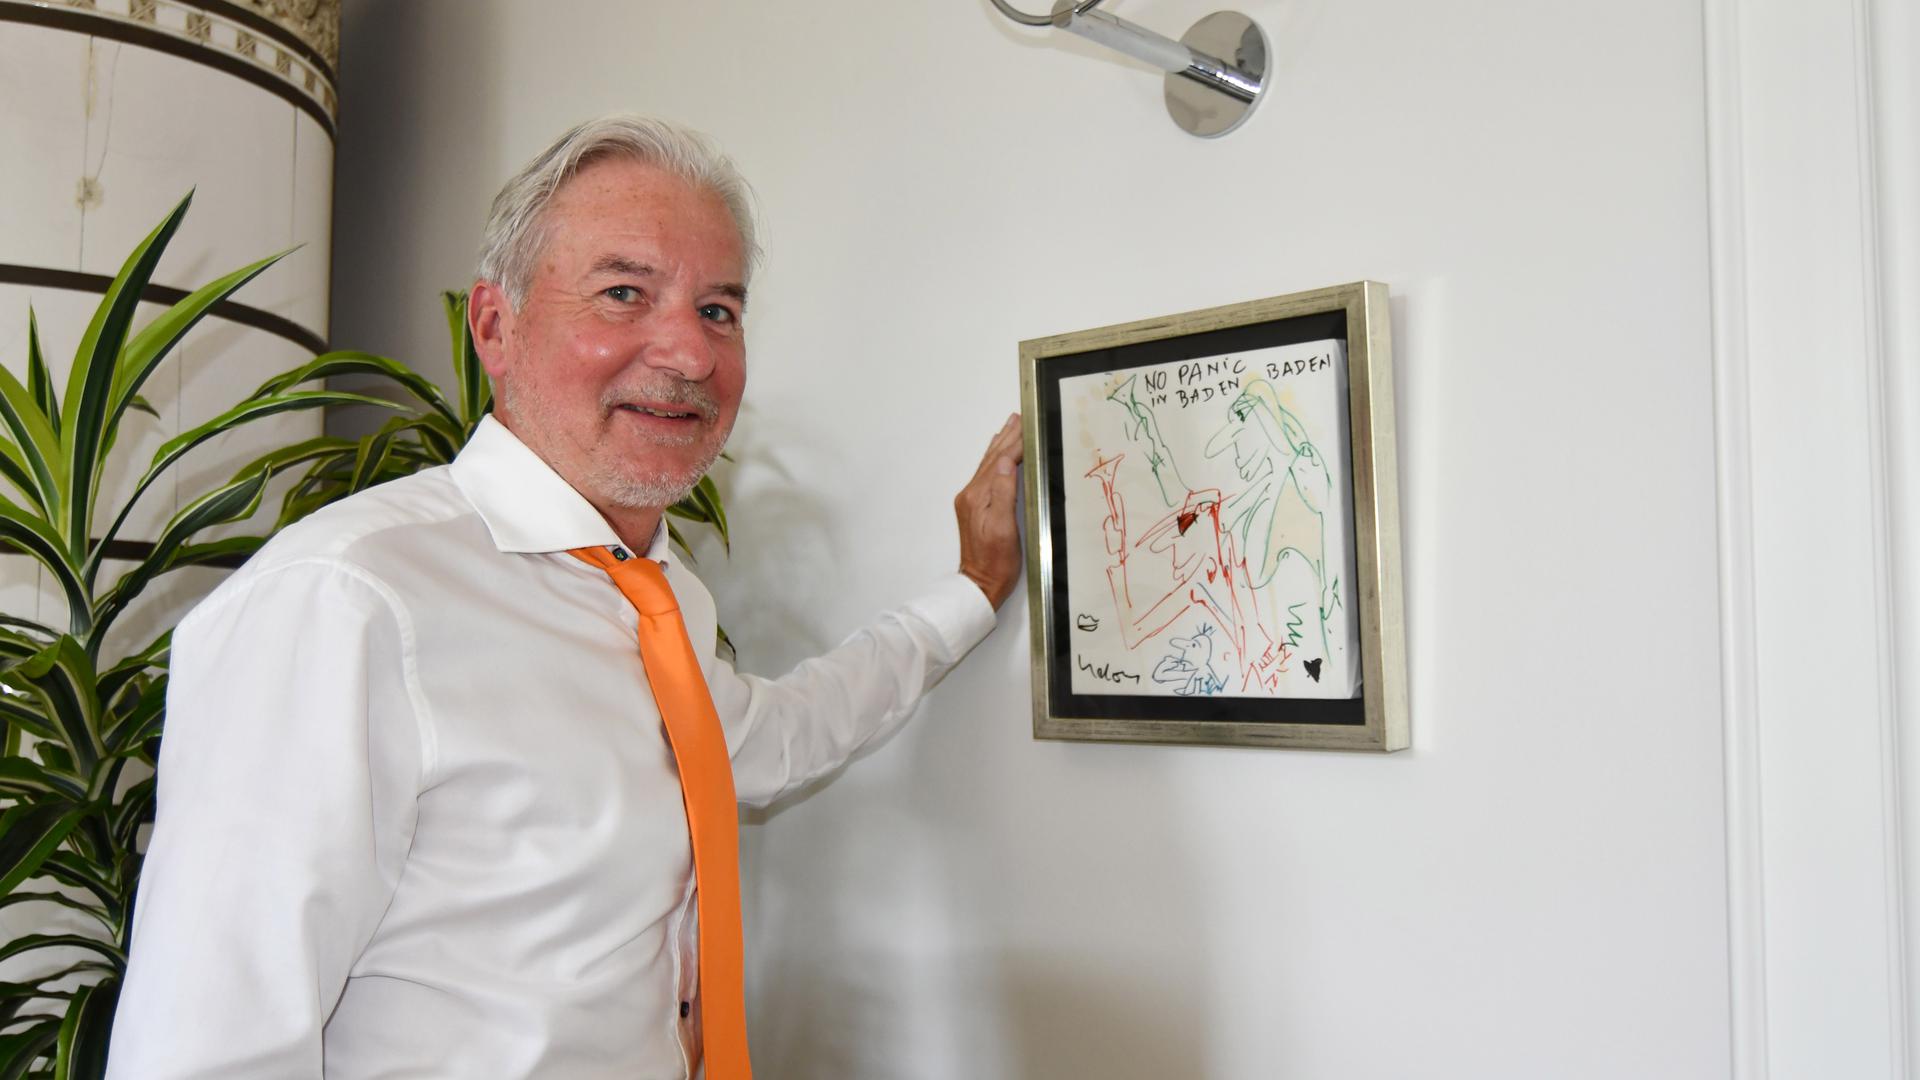 No Panic in Baden-Baden: Das Bild von Udo Lindenberg in Dietmar Späths Büro gibt das Motto für den OB in seinem ersten Amtsjahr vor.